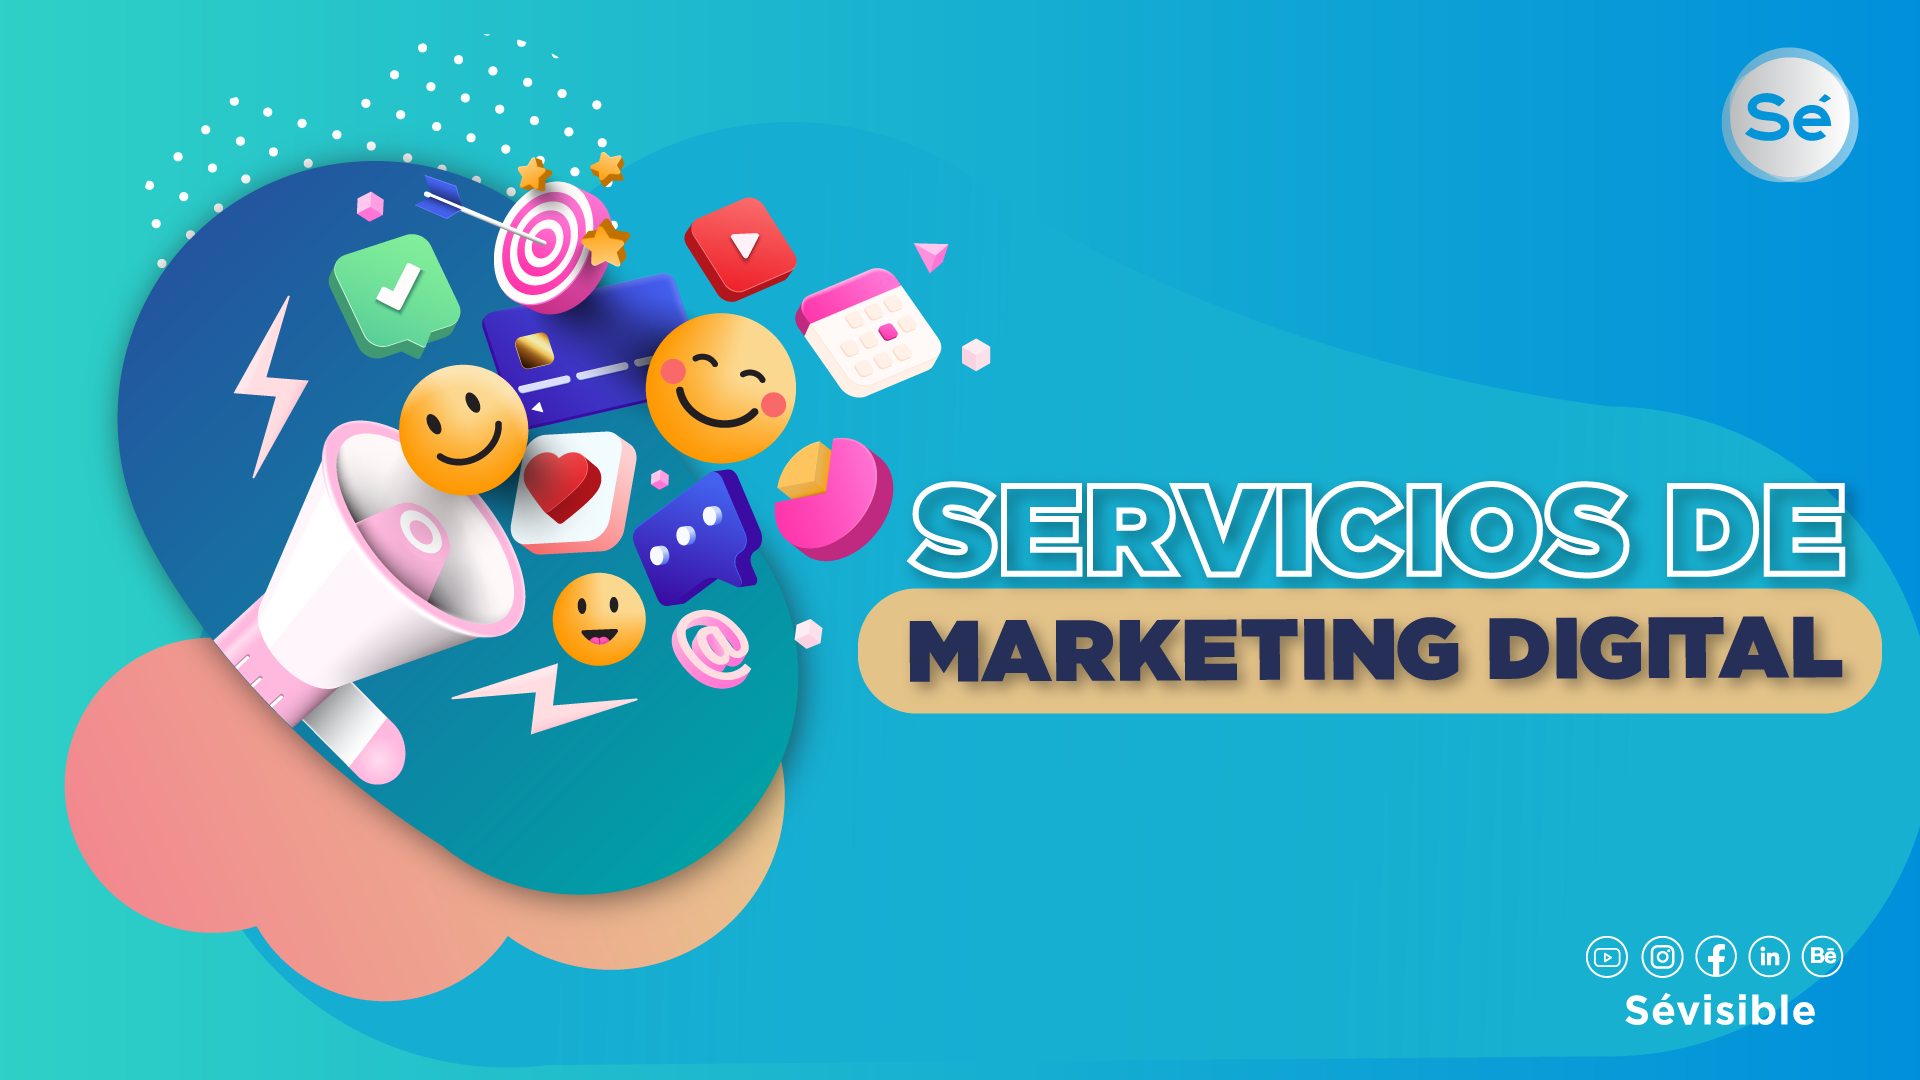 Servicios de Marketing digital